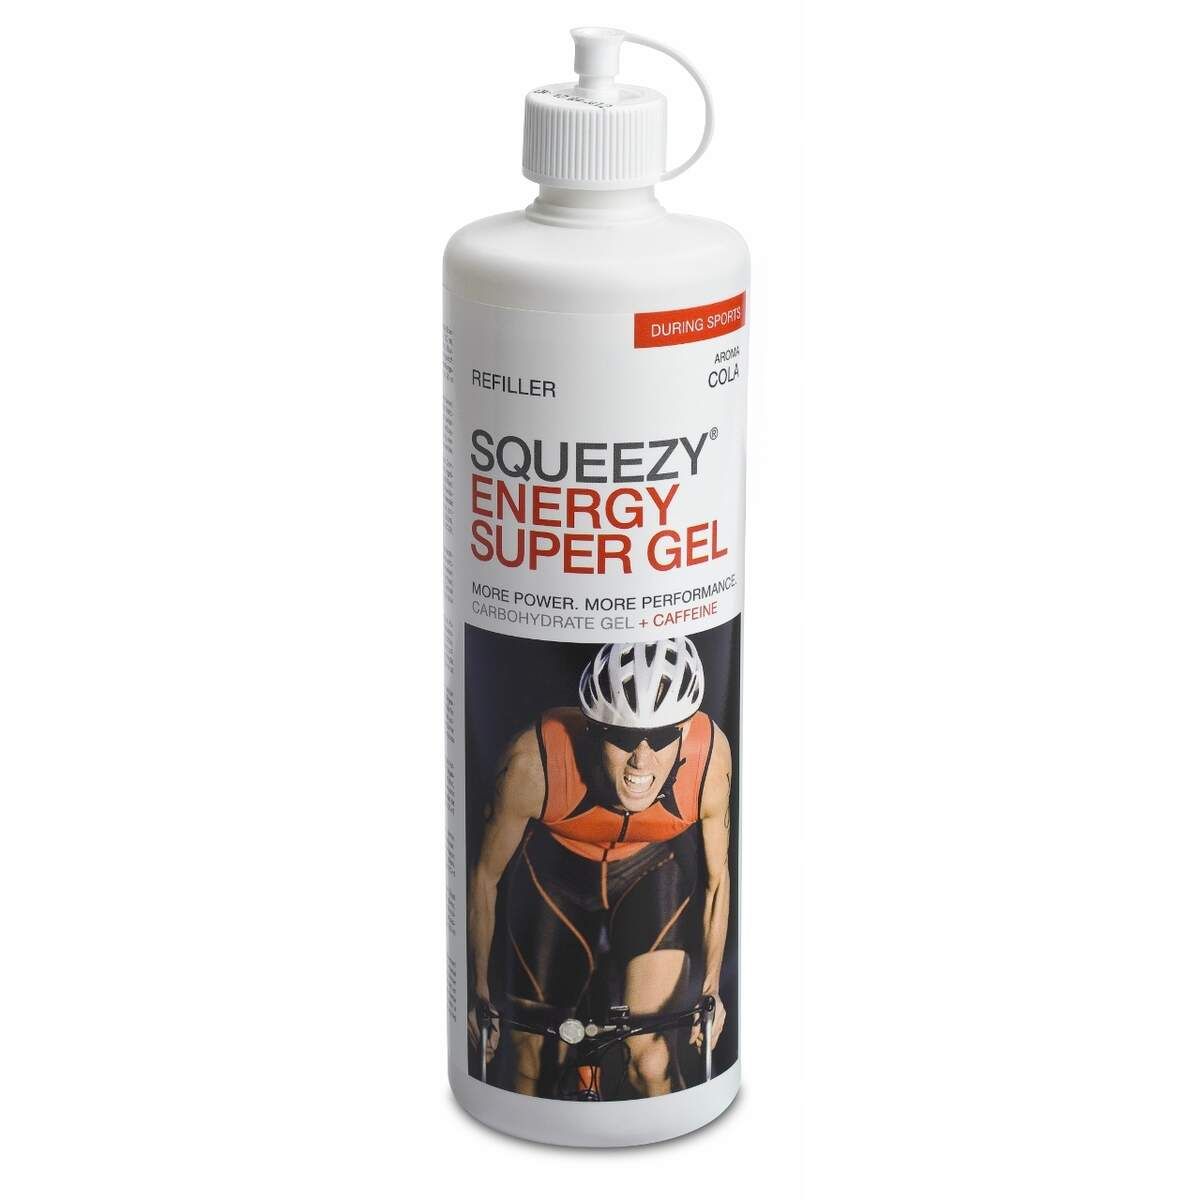 squeezy-super-energy-gel-refiller-50